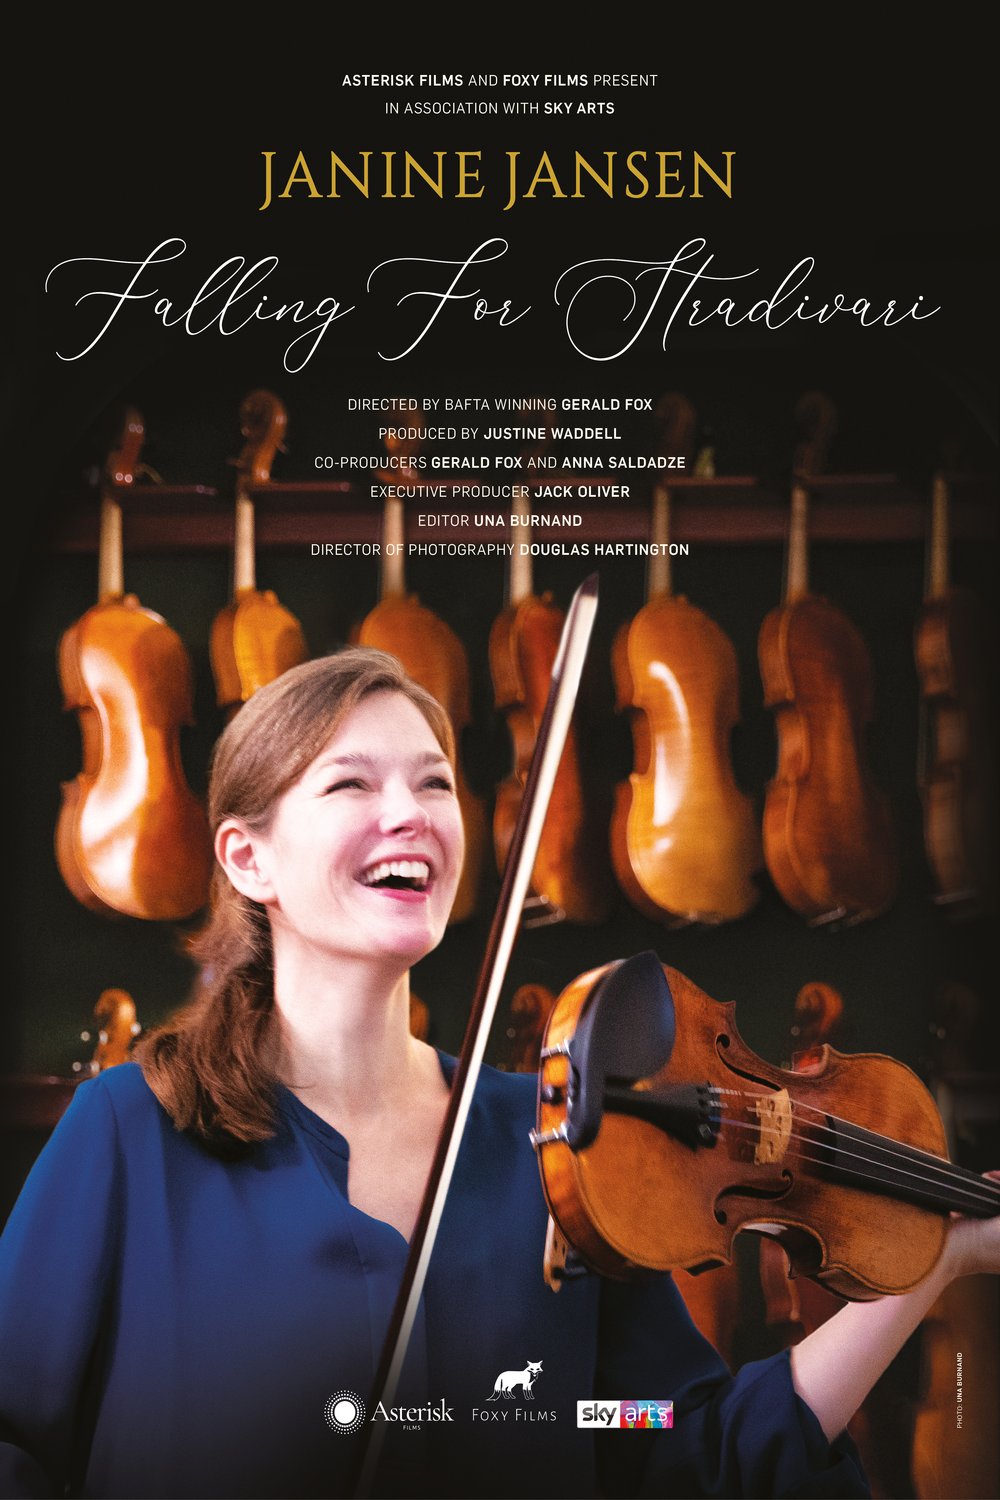 L'affiche du film Janine Jansen Falling for Stradivari